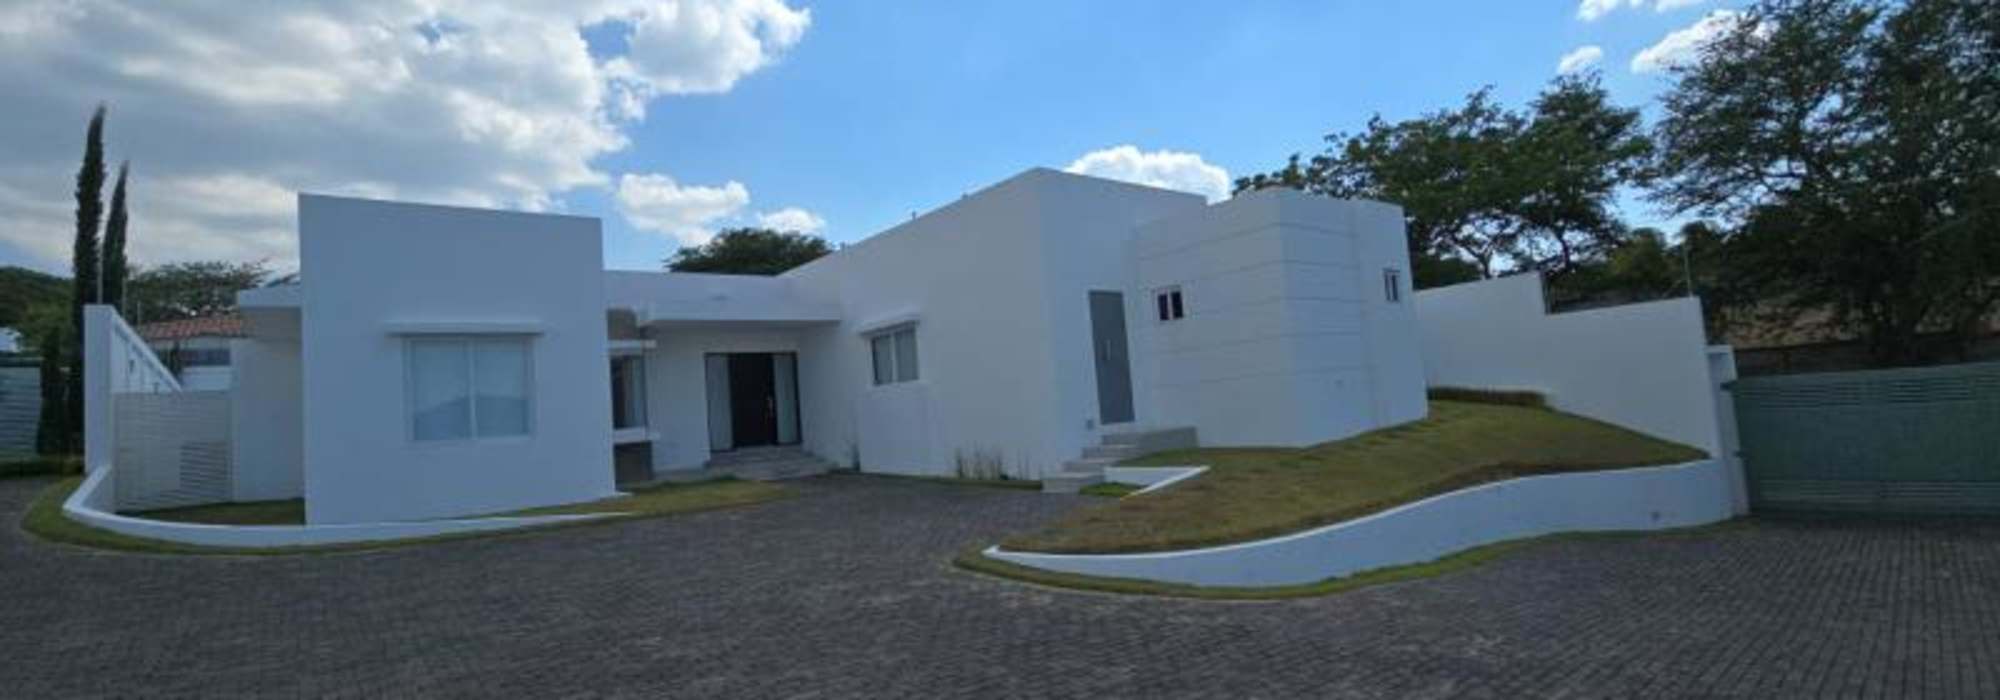 Casa en Condominio Palmares en Santo Domingo